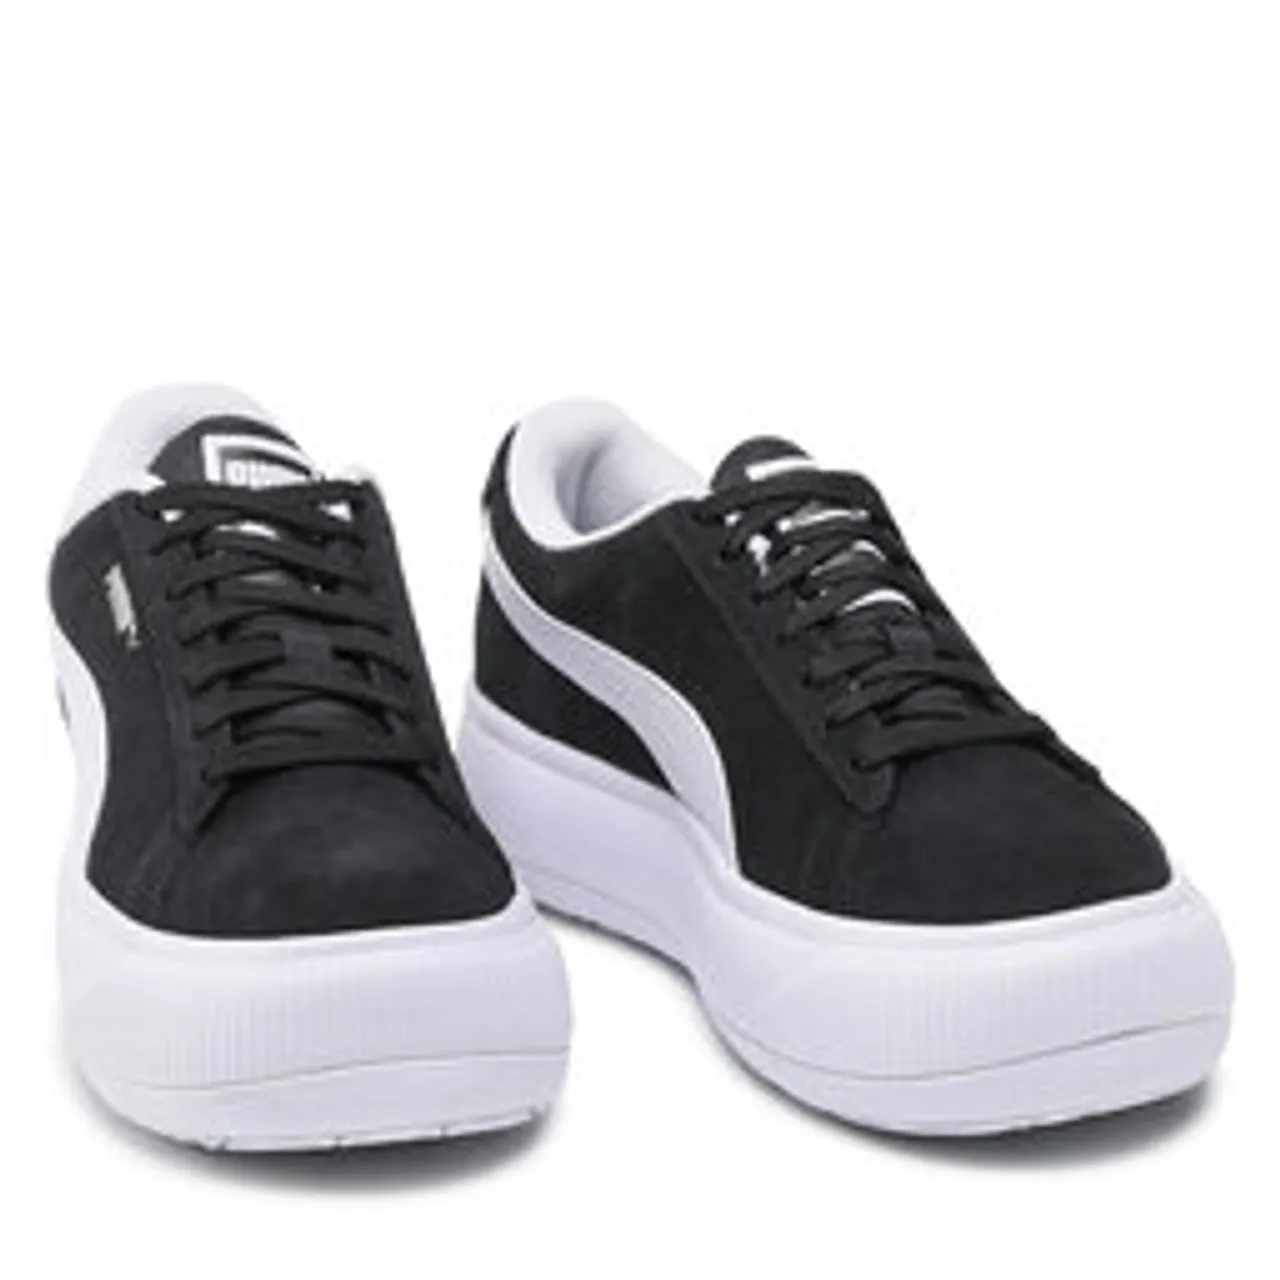 Sneakers Puma Suede Mayu 380686 02 Puma Black/Puma White